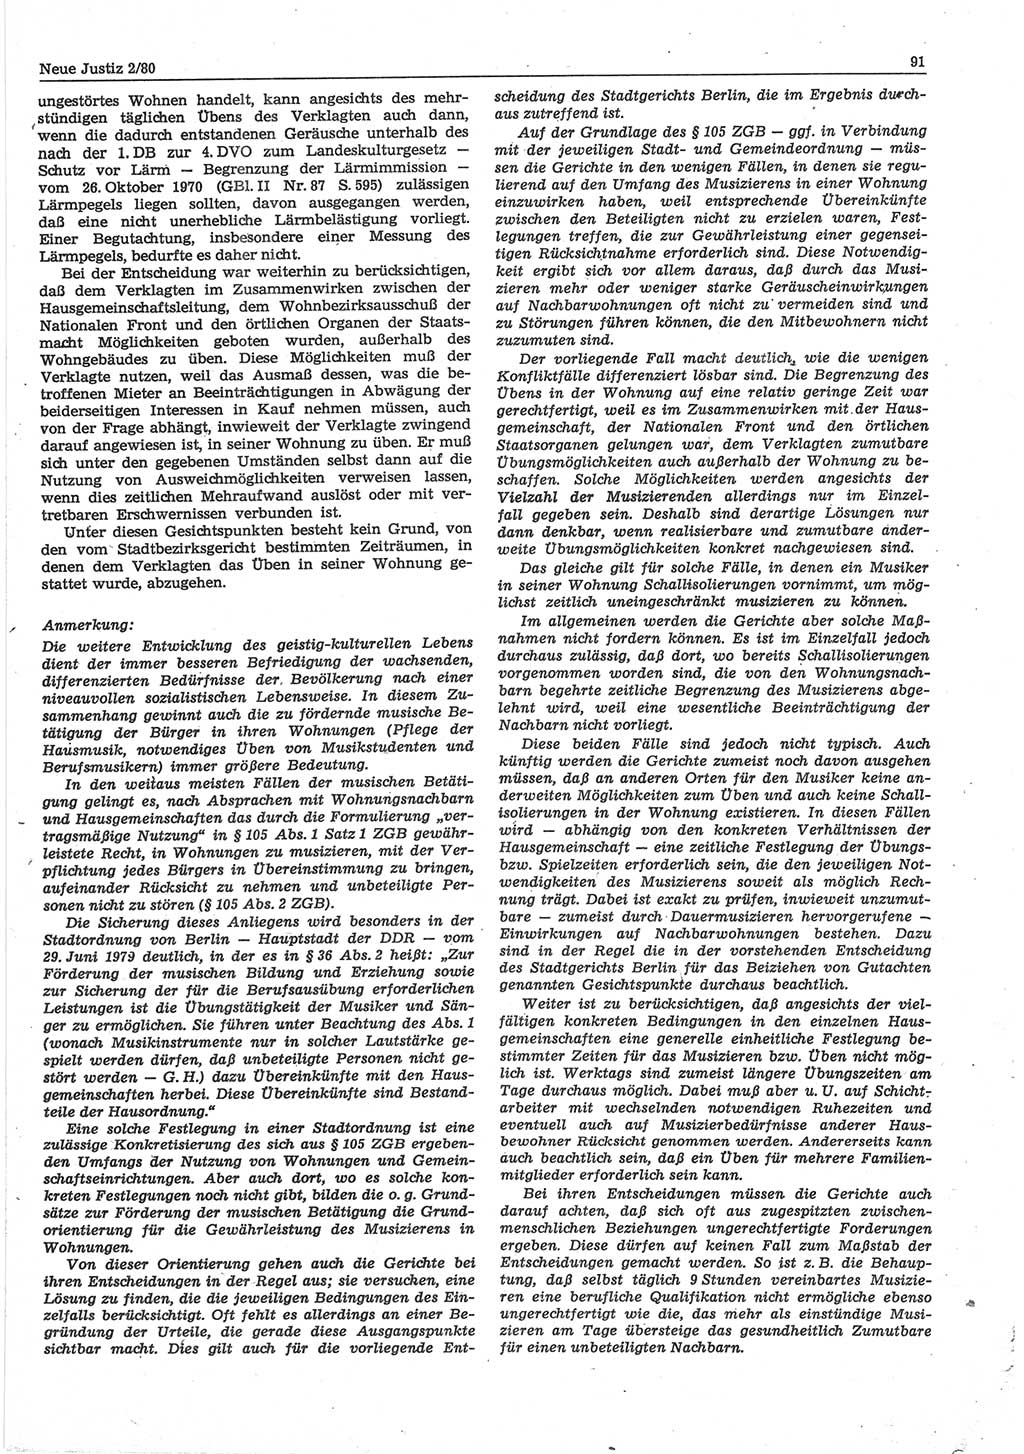 Neue Justiz (NJ), Zeitschrift für sozialistisches Recht und Gesetzlichkeit [Deutsche Demokratische Republik (DDR)], 34. Jahrgang 1980, Seite 91 (NJ DDR 1980, S. 91)